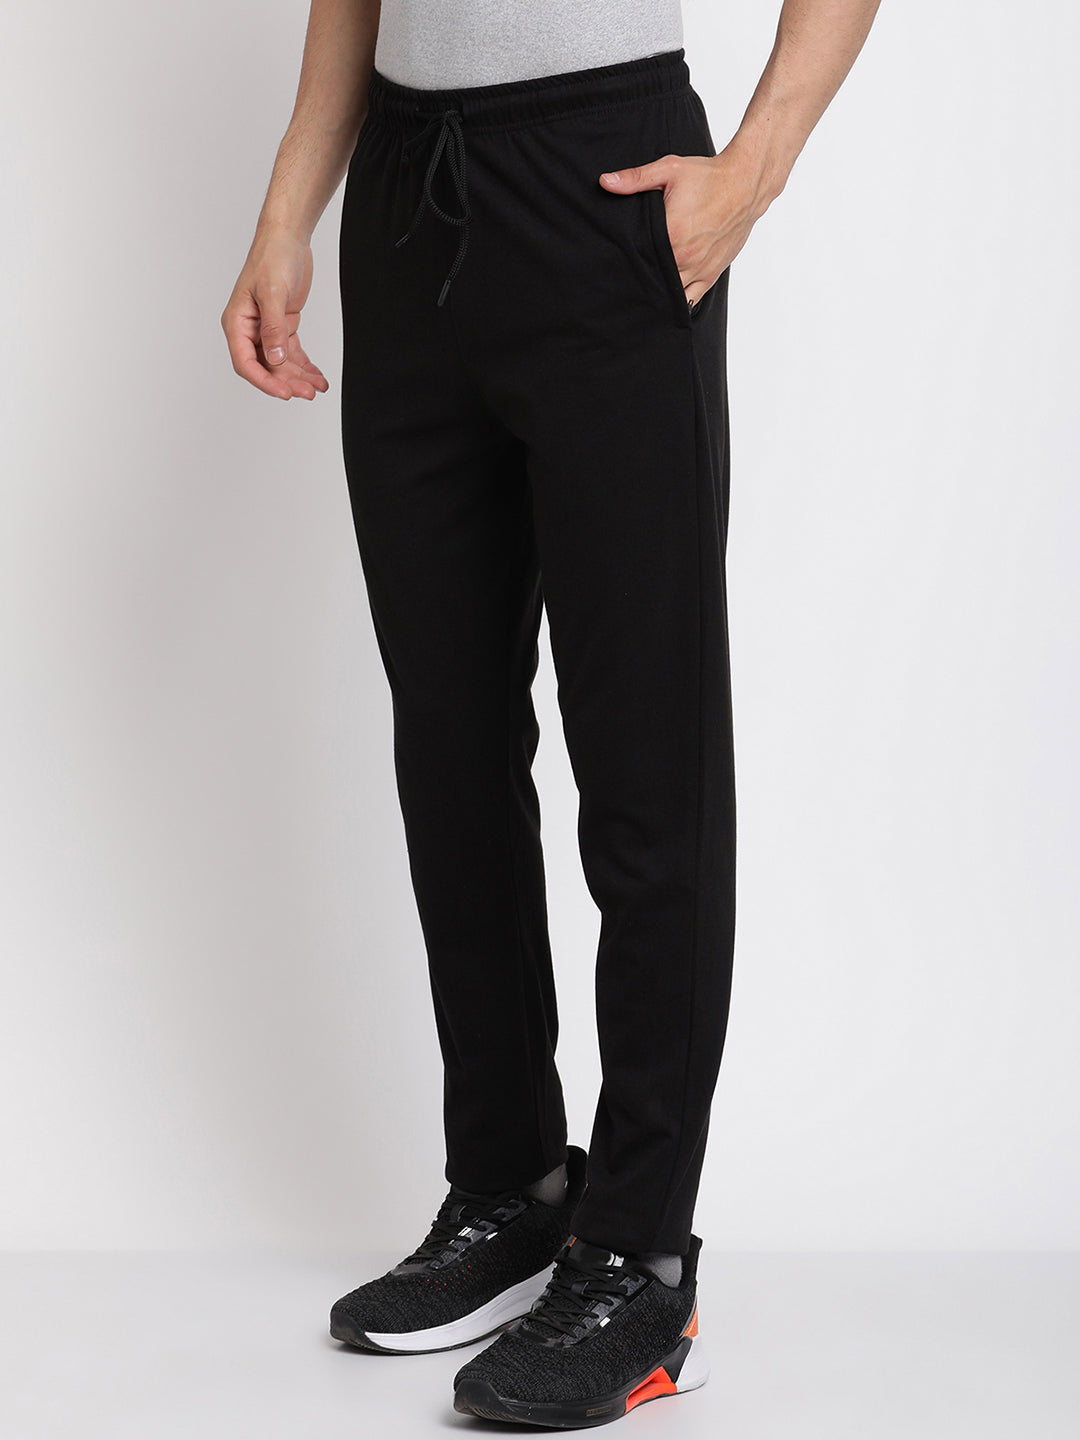 Slim fit cotton Joggers- Black – Zebo Active Wear